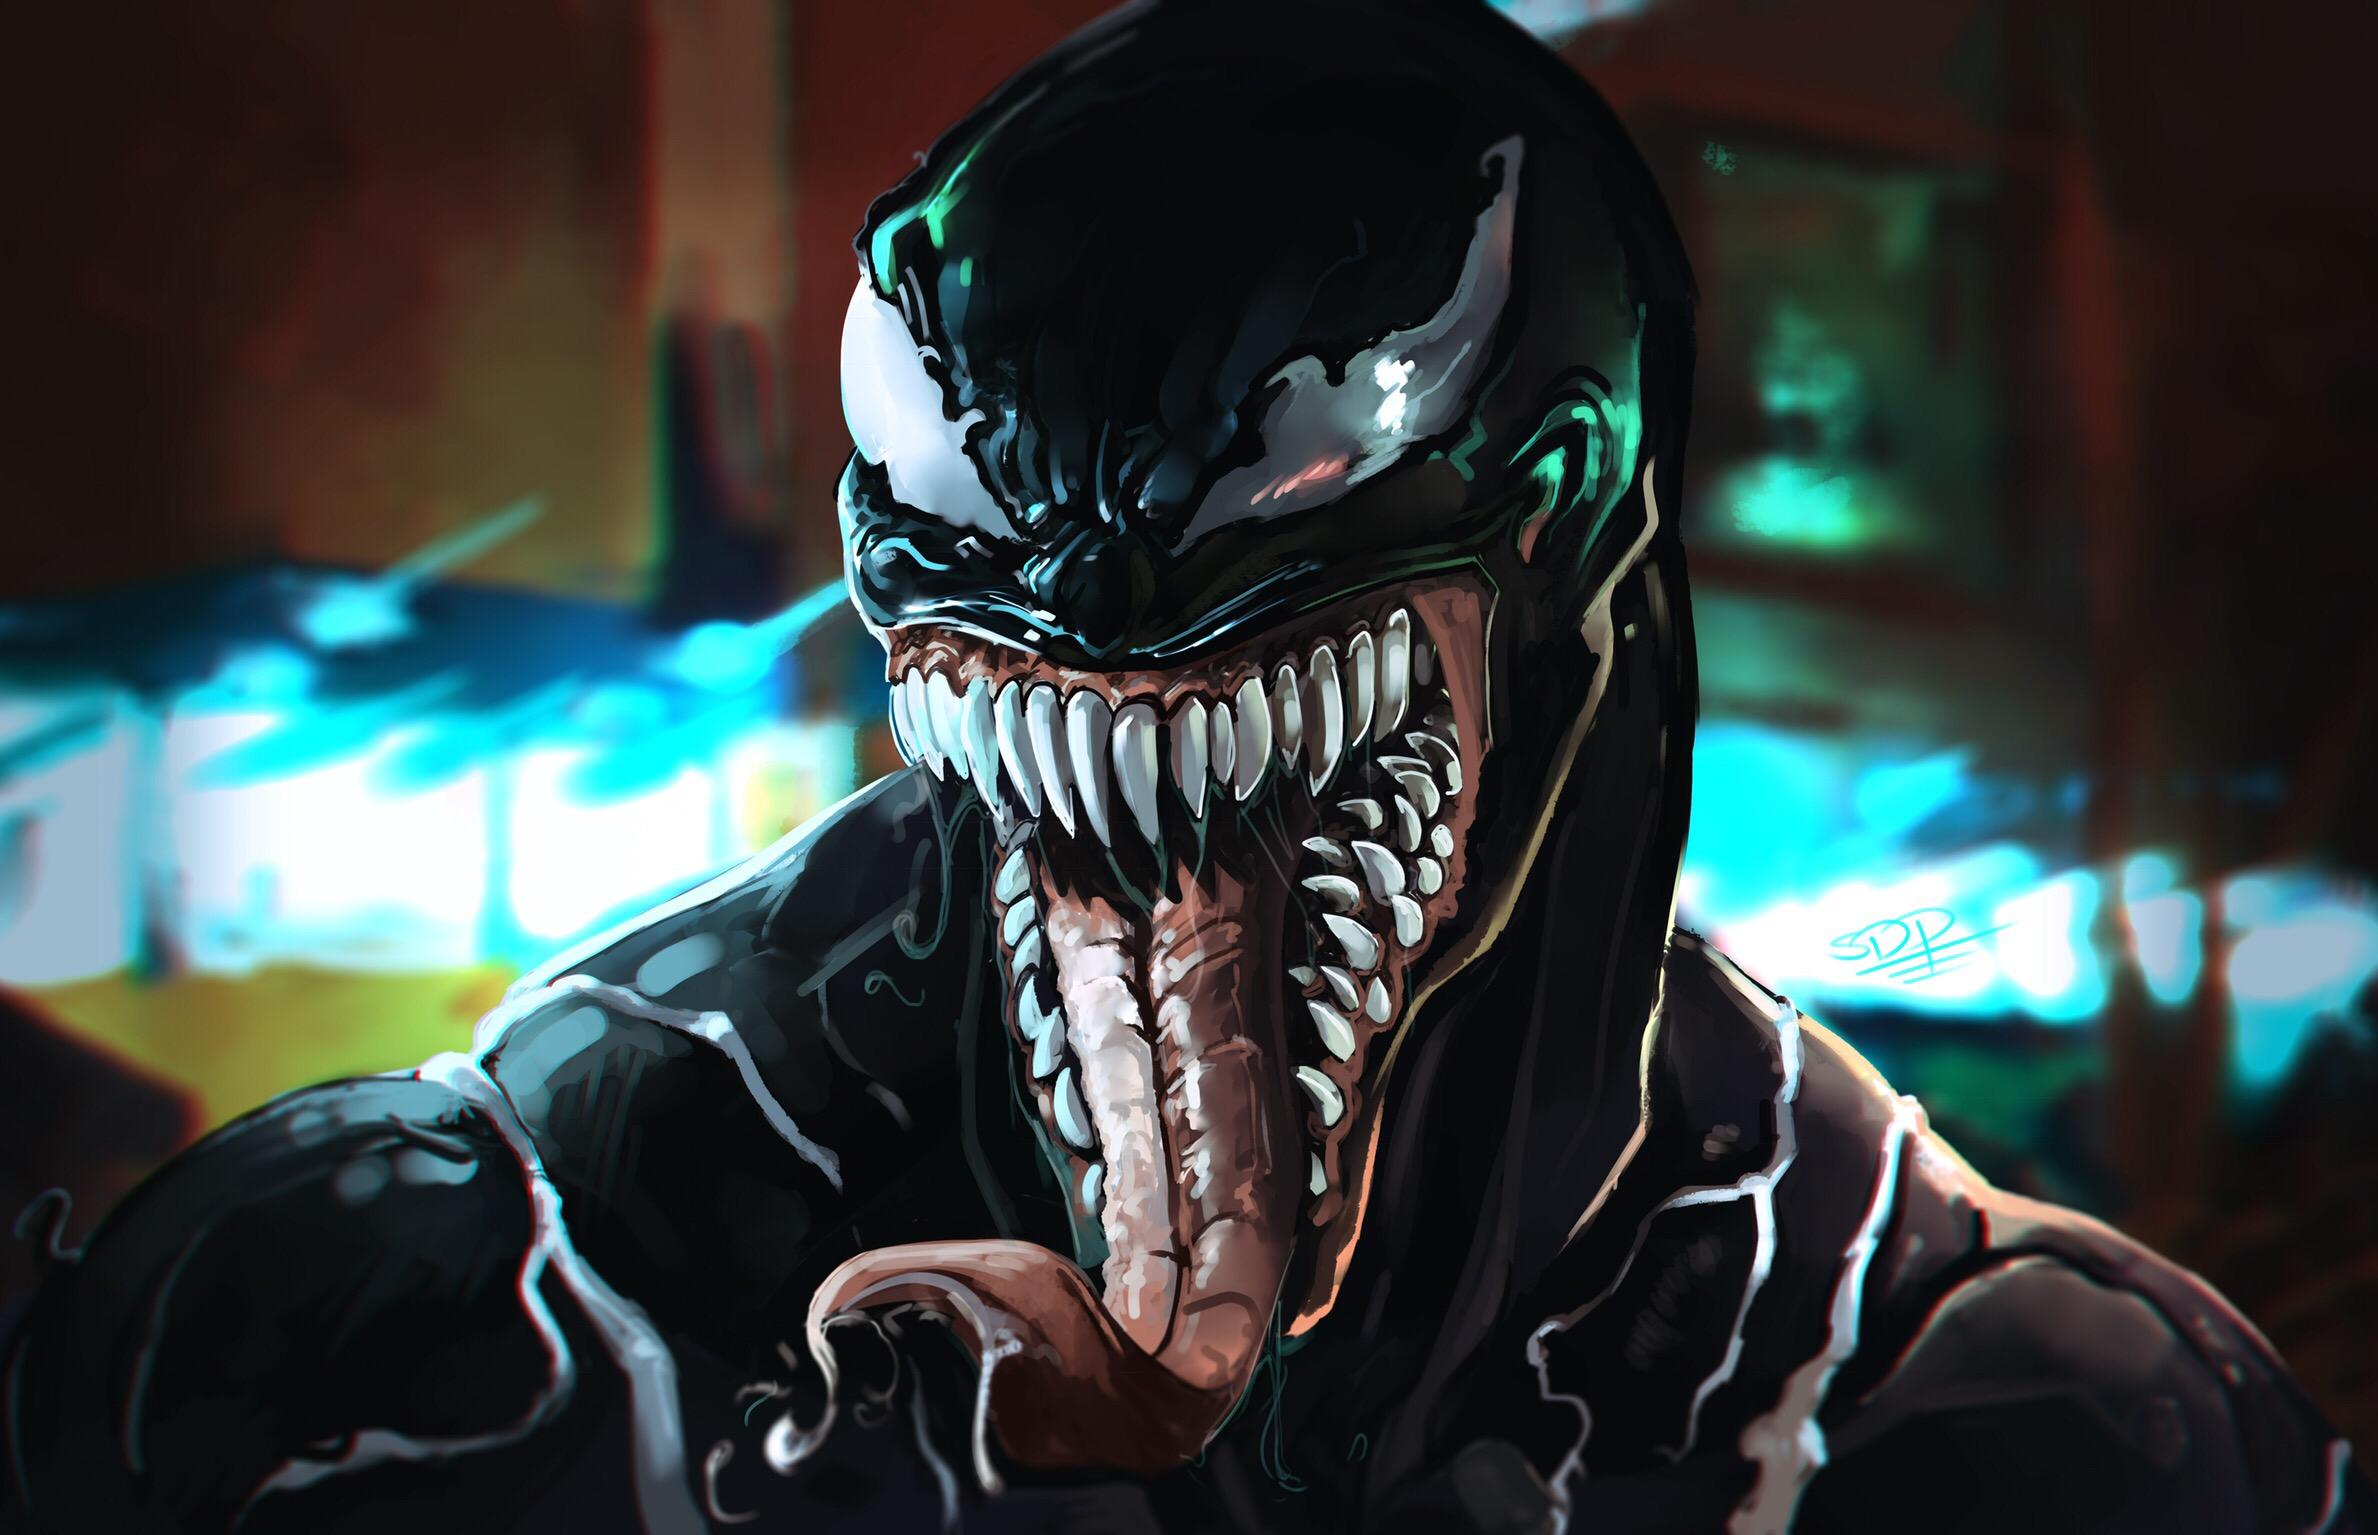 2378 x 1535 · jpeg - Venom HD Wallpaper | Background Image | 2378x1535 | ID:917200 ...